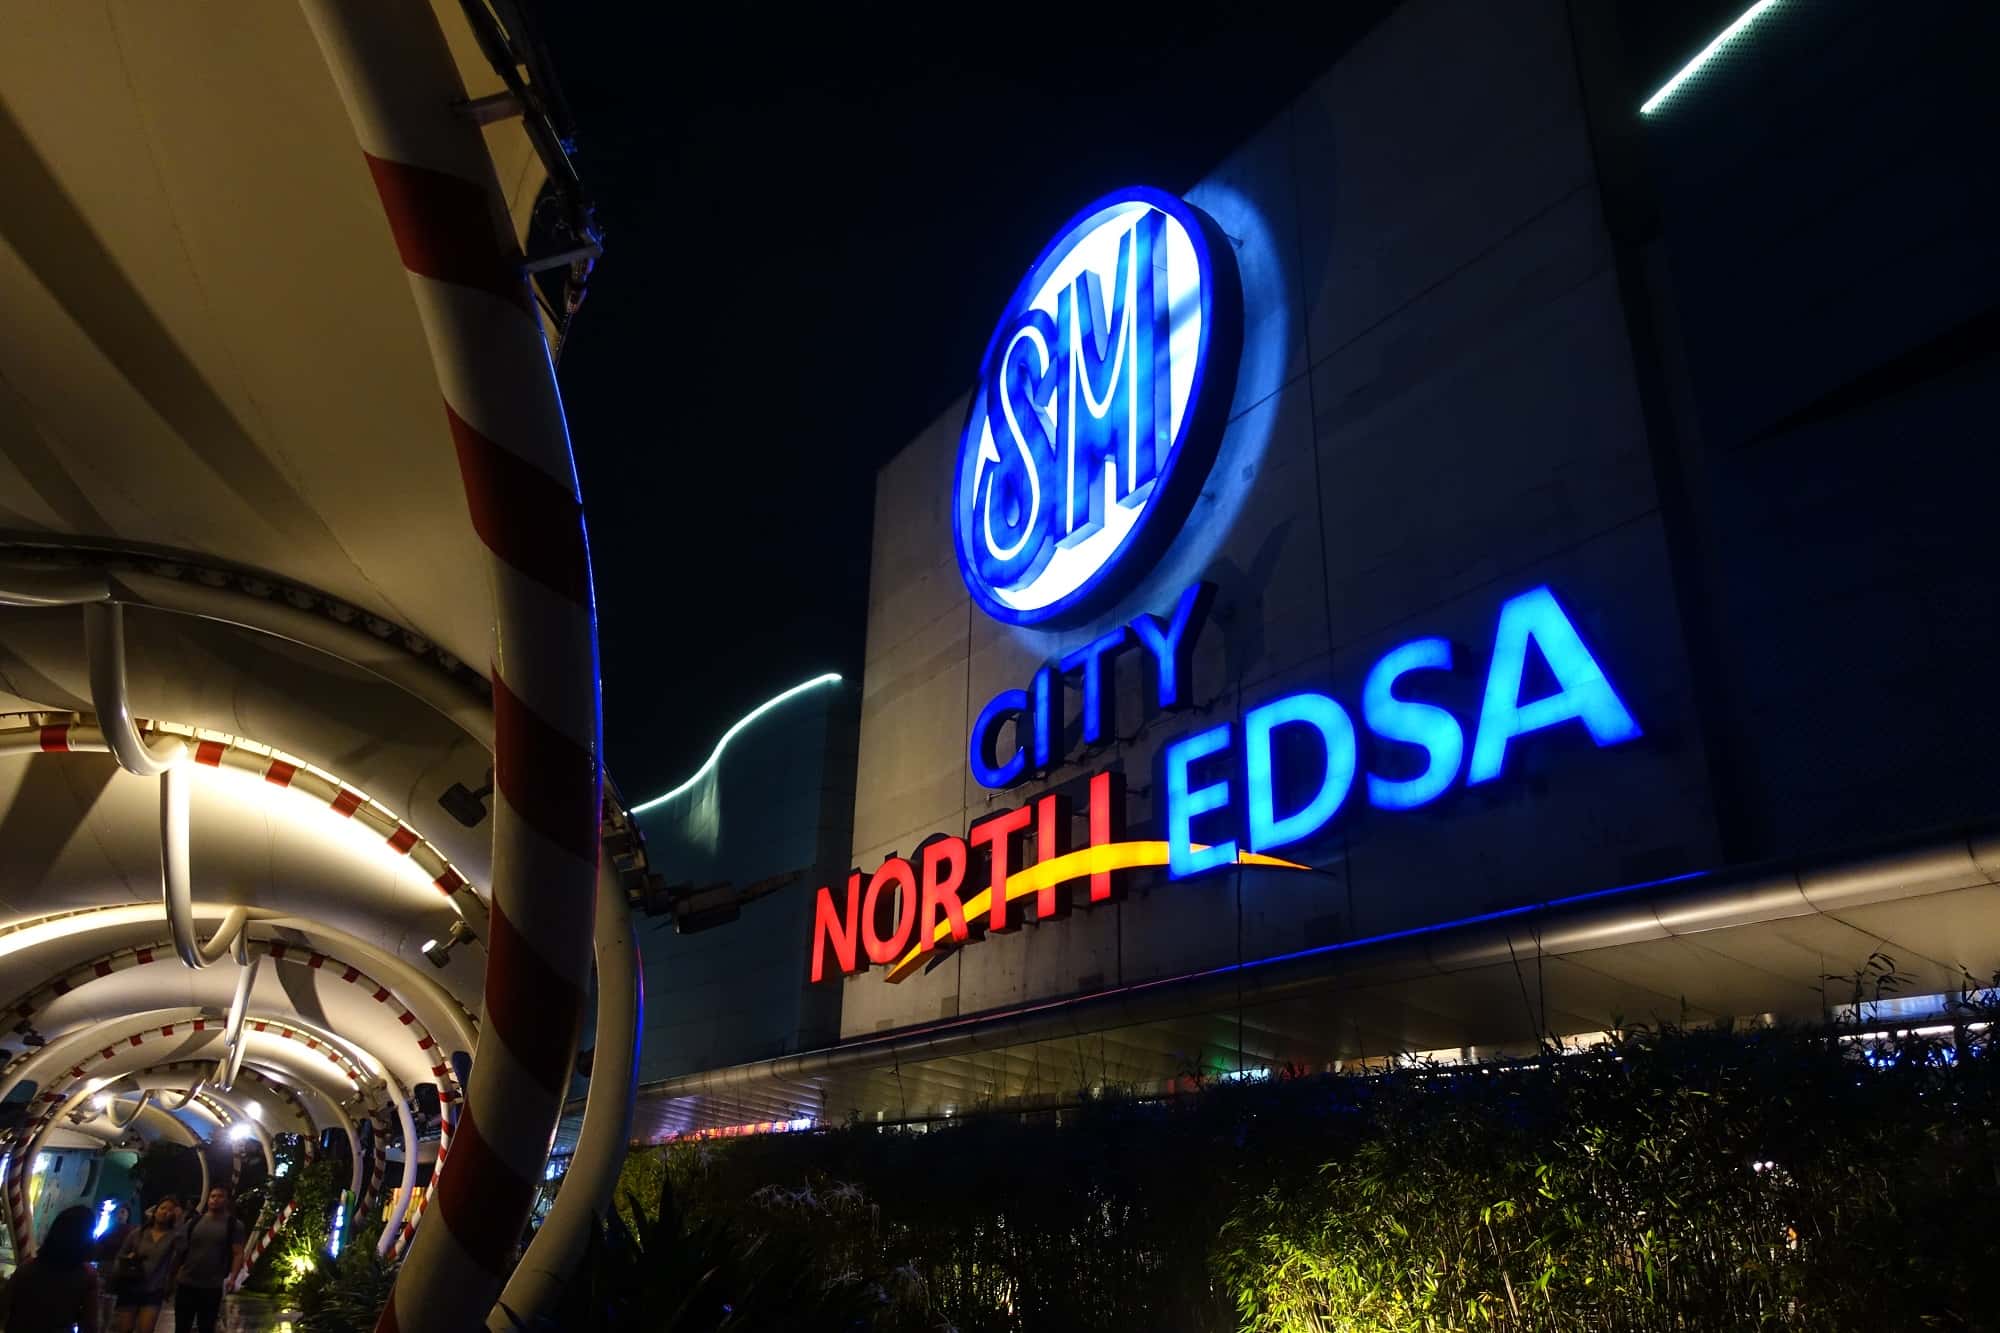 SMシティ・ノースエドサNorth Edsa